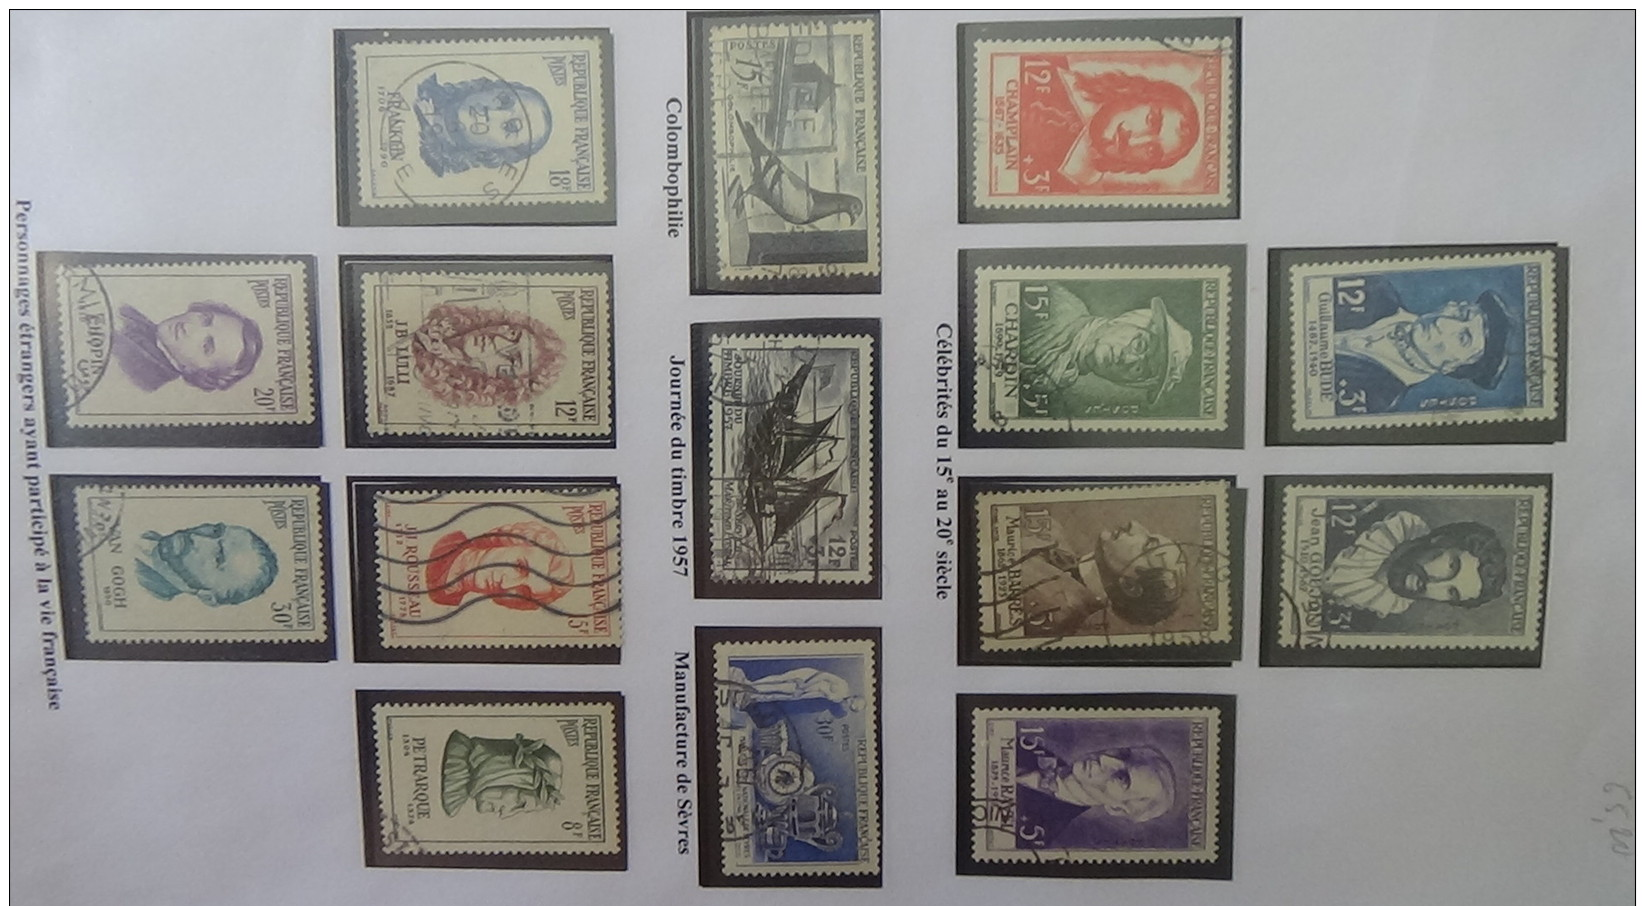 C Collection France oblitéré dont trés belles série GH de 1951 à 1971 (manque peu de timbre) cote +++ A saisir !!!